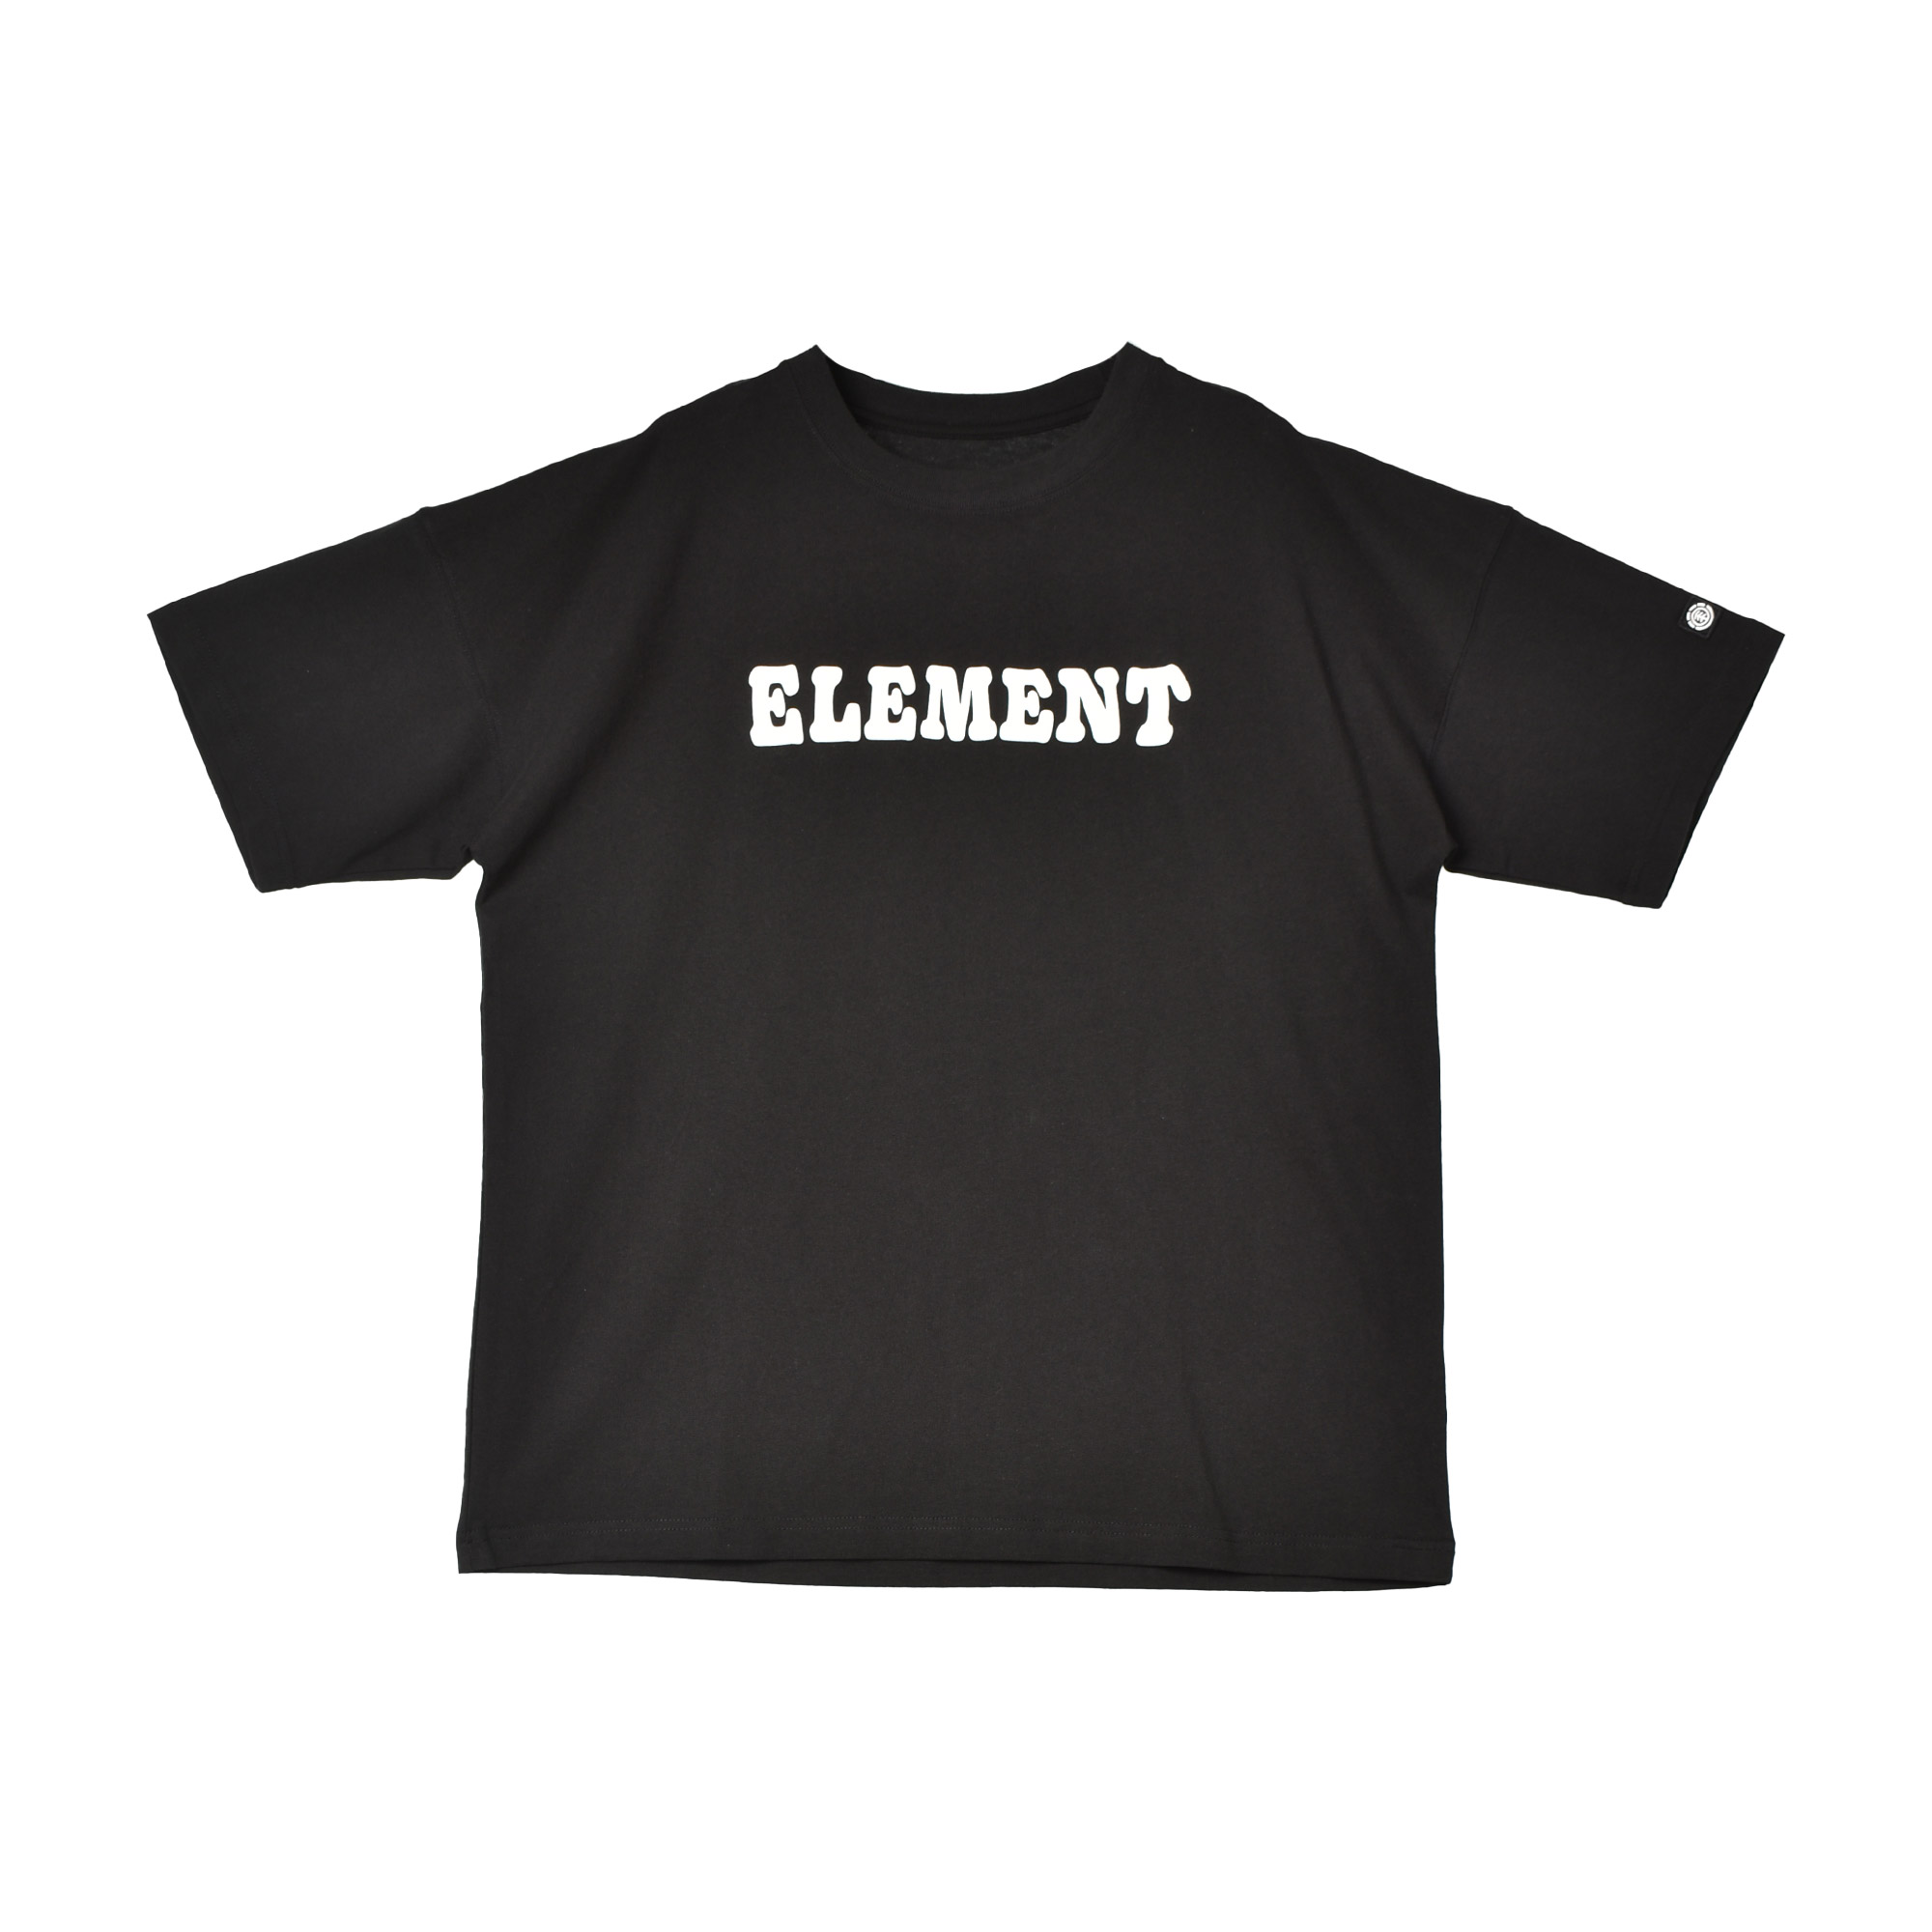 エレメント 半袖Tシャツ メンズ CHILD SS ELEMENT BE021240 ブラック 黒 ...